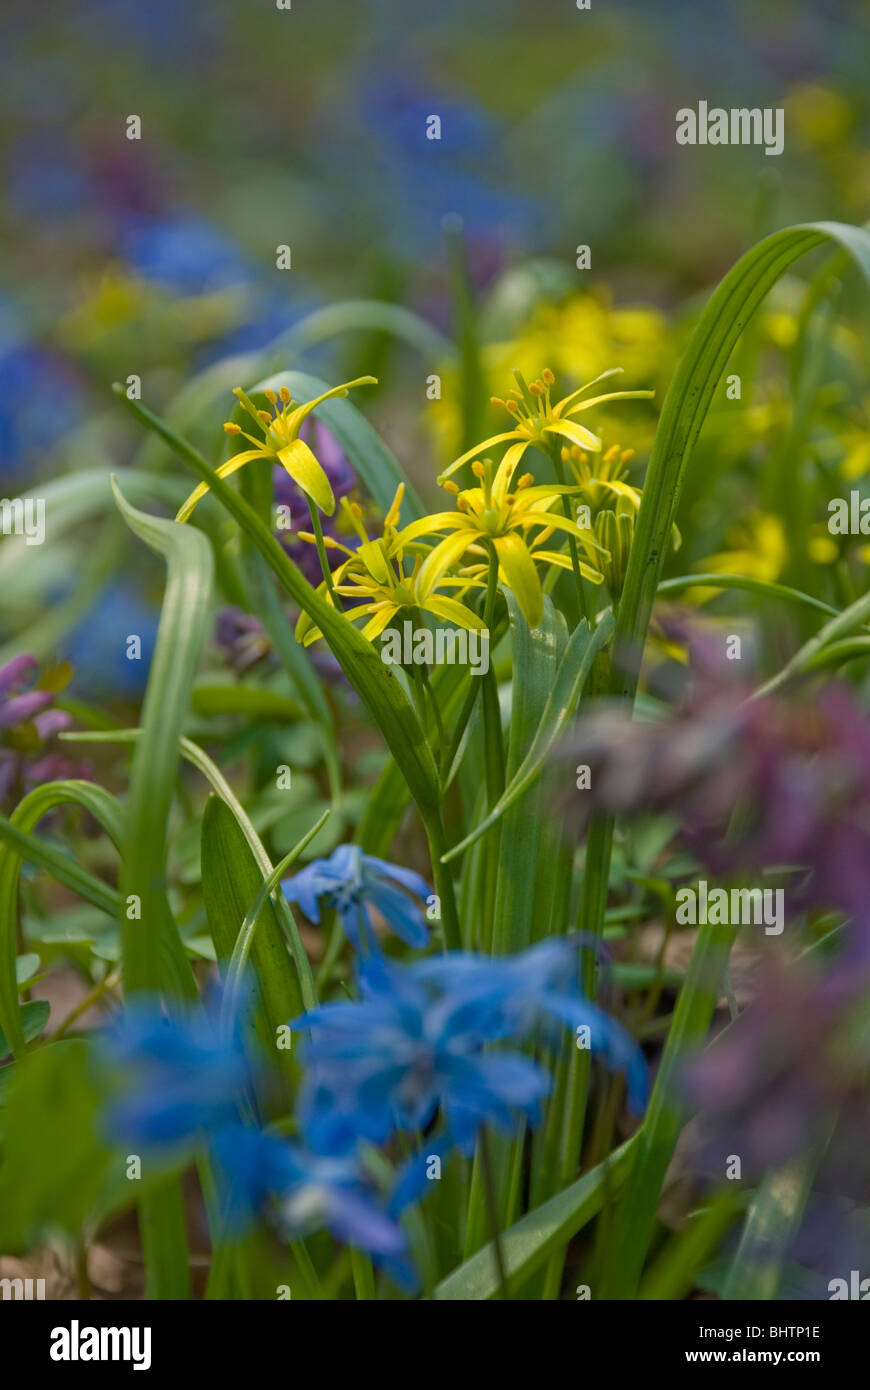 Frühlingshafte Blumen, Schneeglöckchen, Feld Frühlingsblumen im Wald, gelb lila blau Blumen verwischt durch die maximale Blende Stockfoto